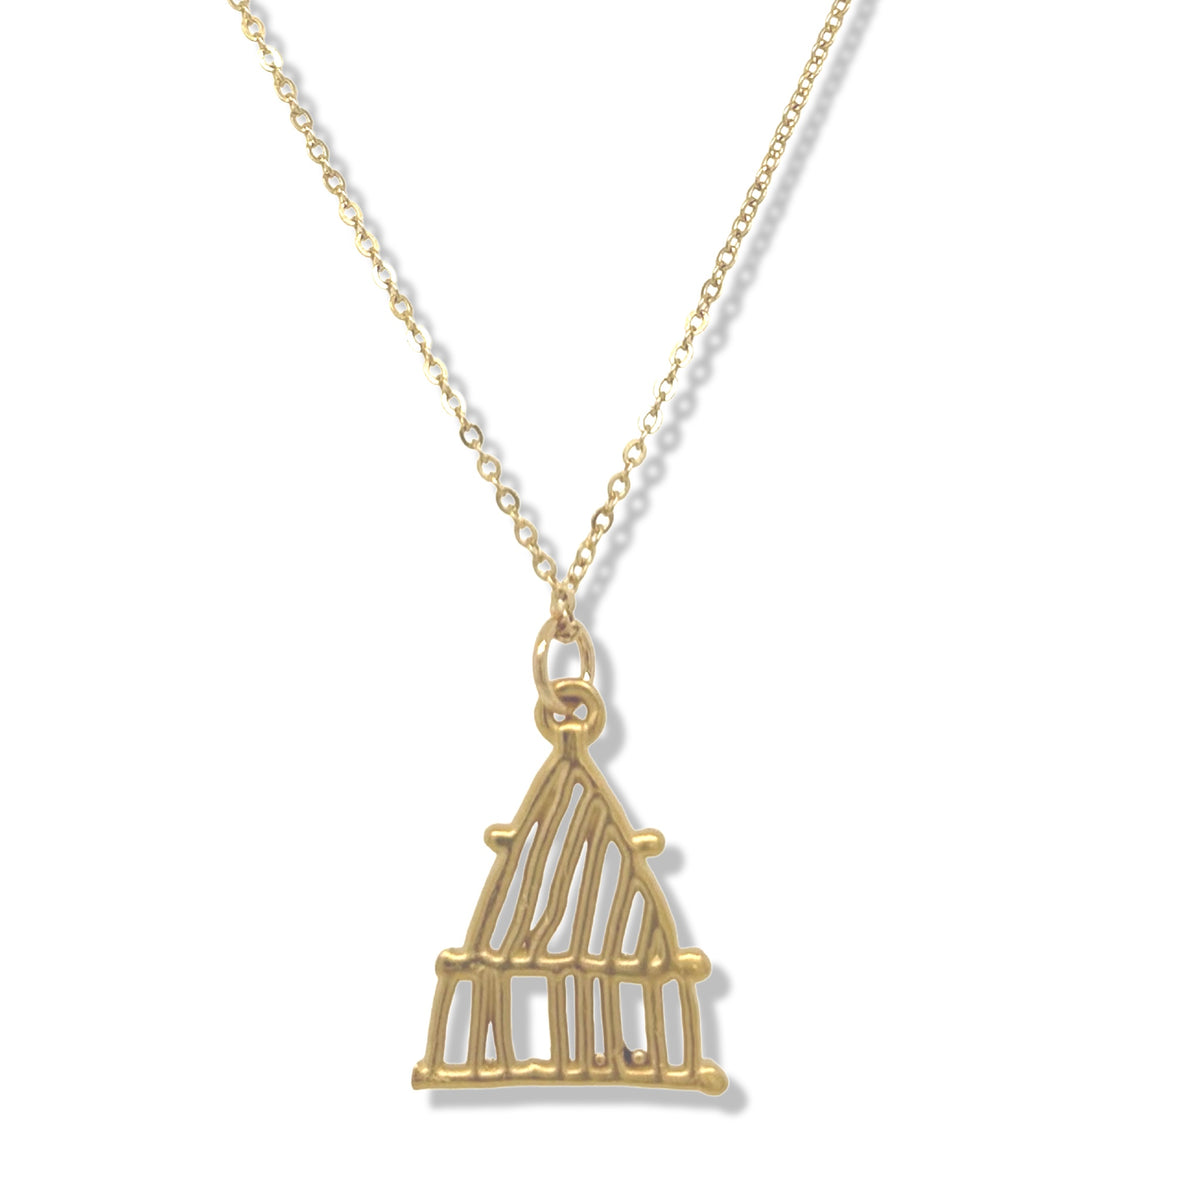 Zazel necklace in Gold | KSD Jewelry